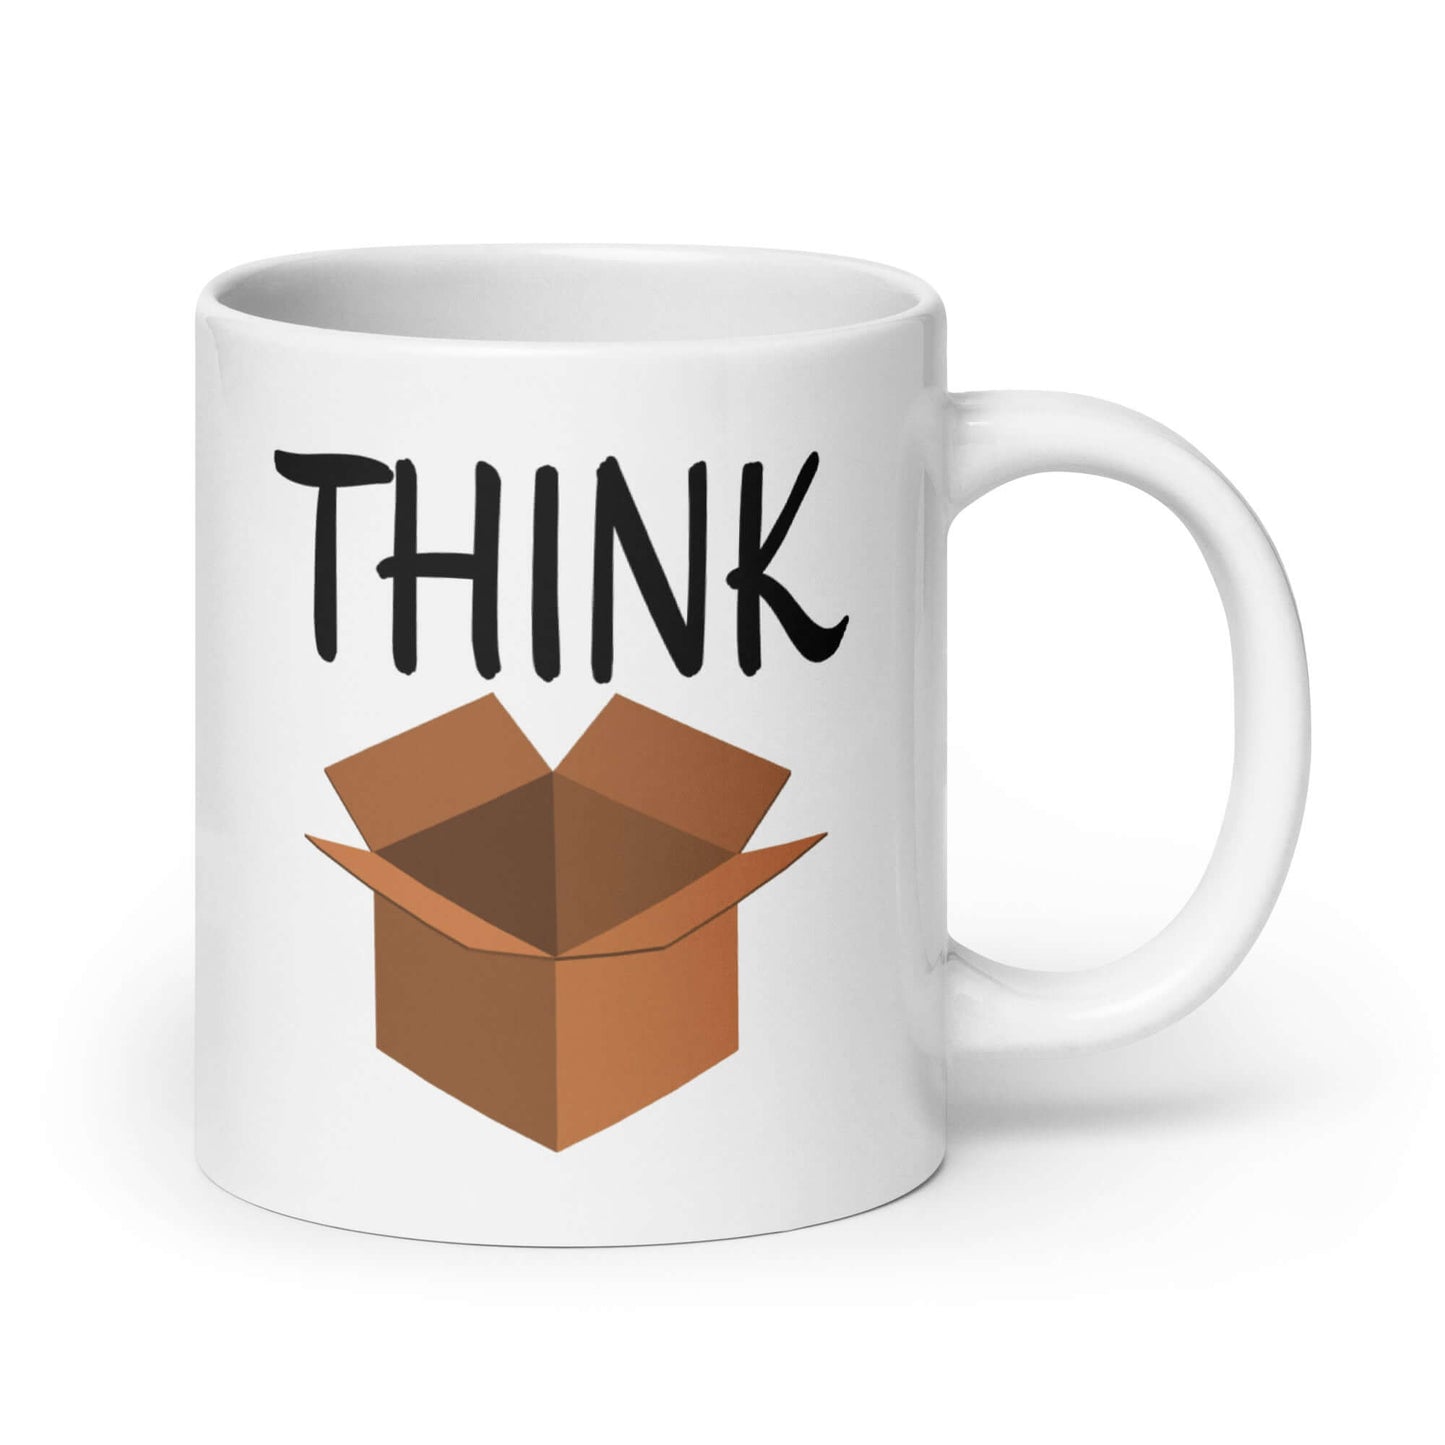 Think outside the box coffee mug